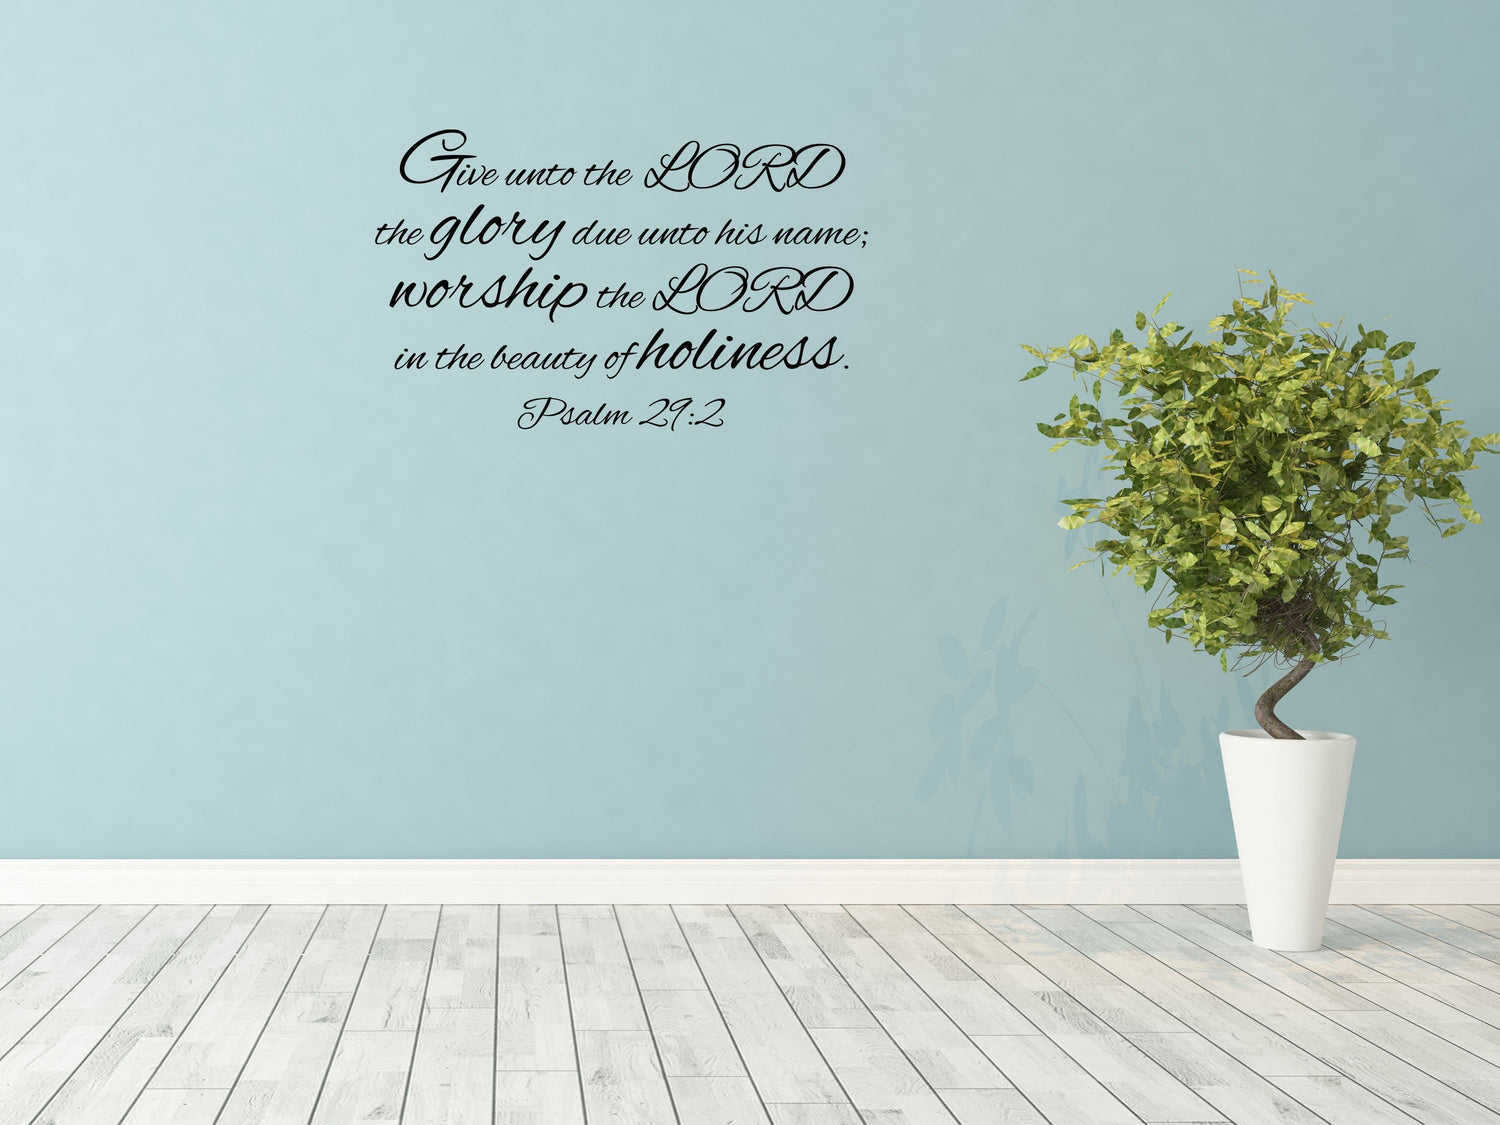 Psalm 29:2 - Scripture Verse Sticker Inspirational Wall Signs 